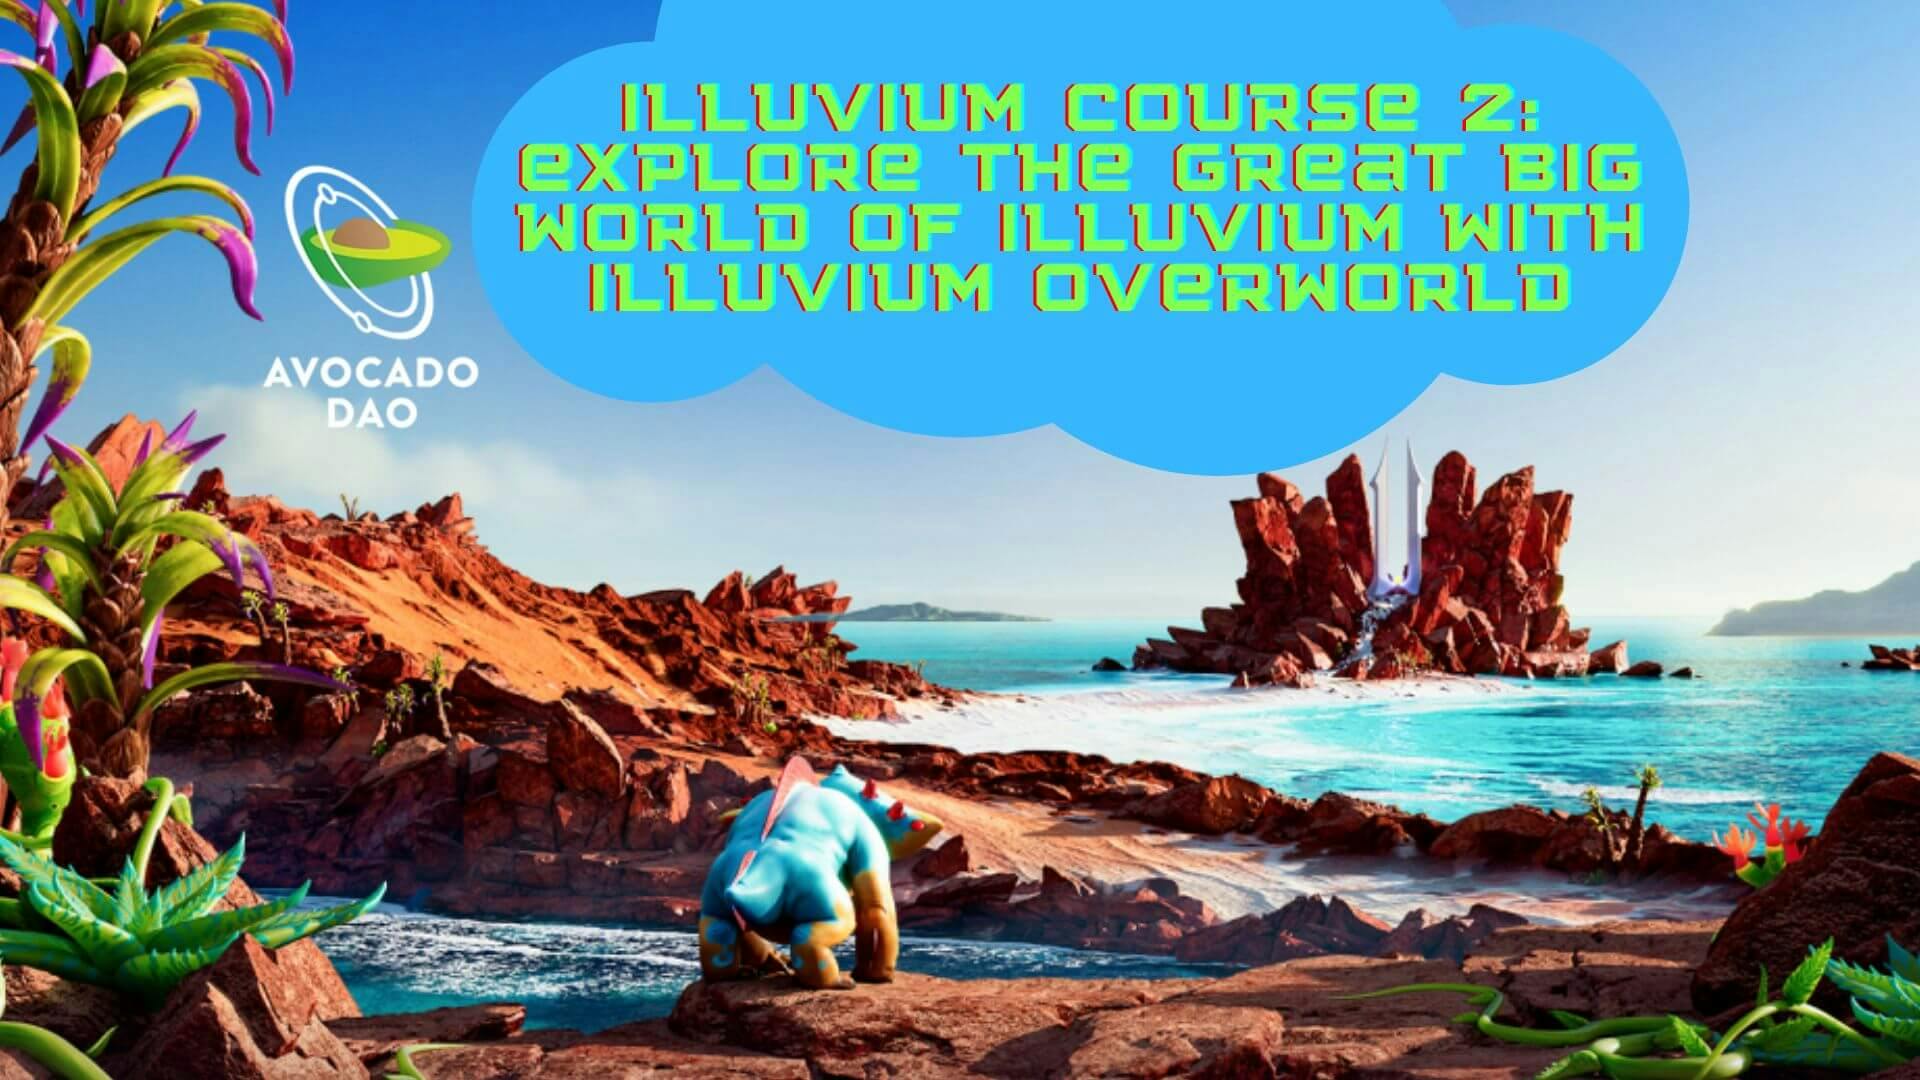 Illuvium Course 2: Explore the great big world of Illuvium with Illuvium Overworld